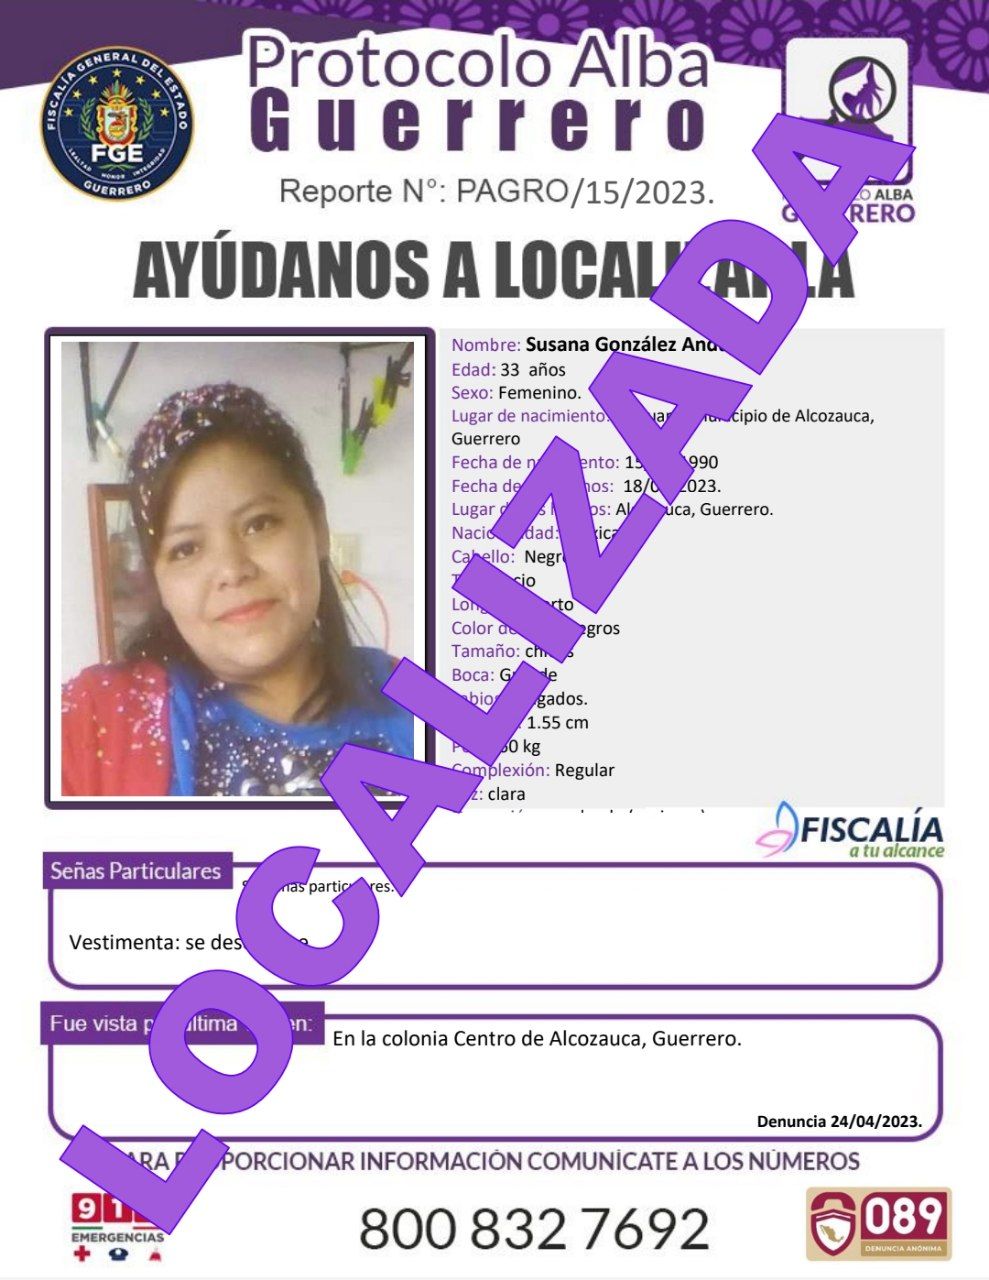 Fiscalía General Del Estado Agradece Su Colaboración Susana González Andujar Ya Fue Localizada.